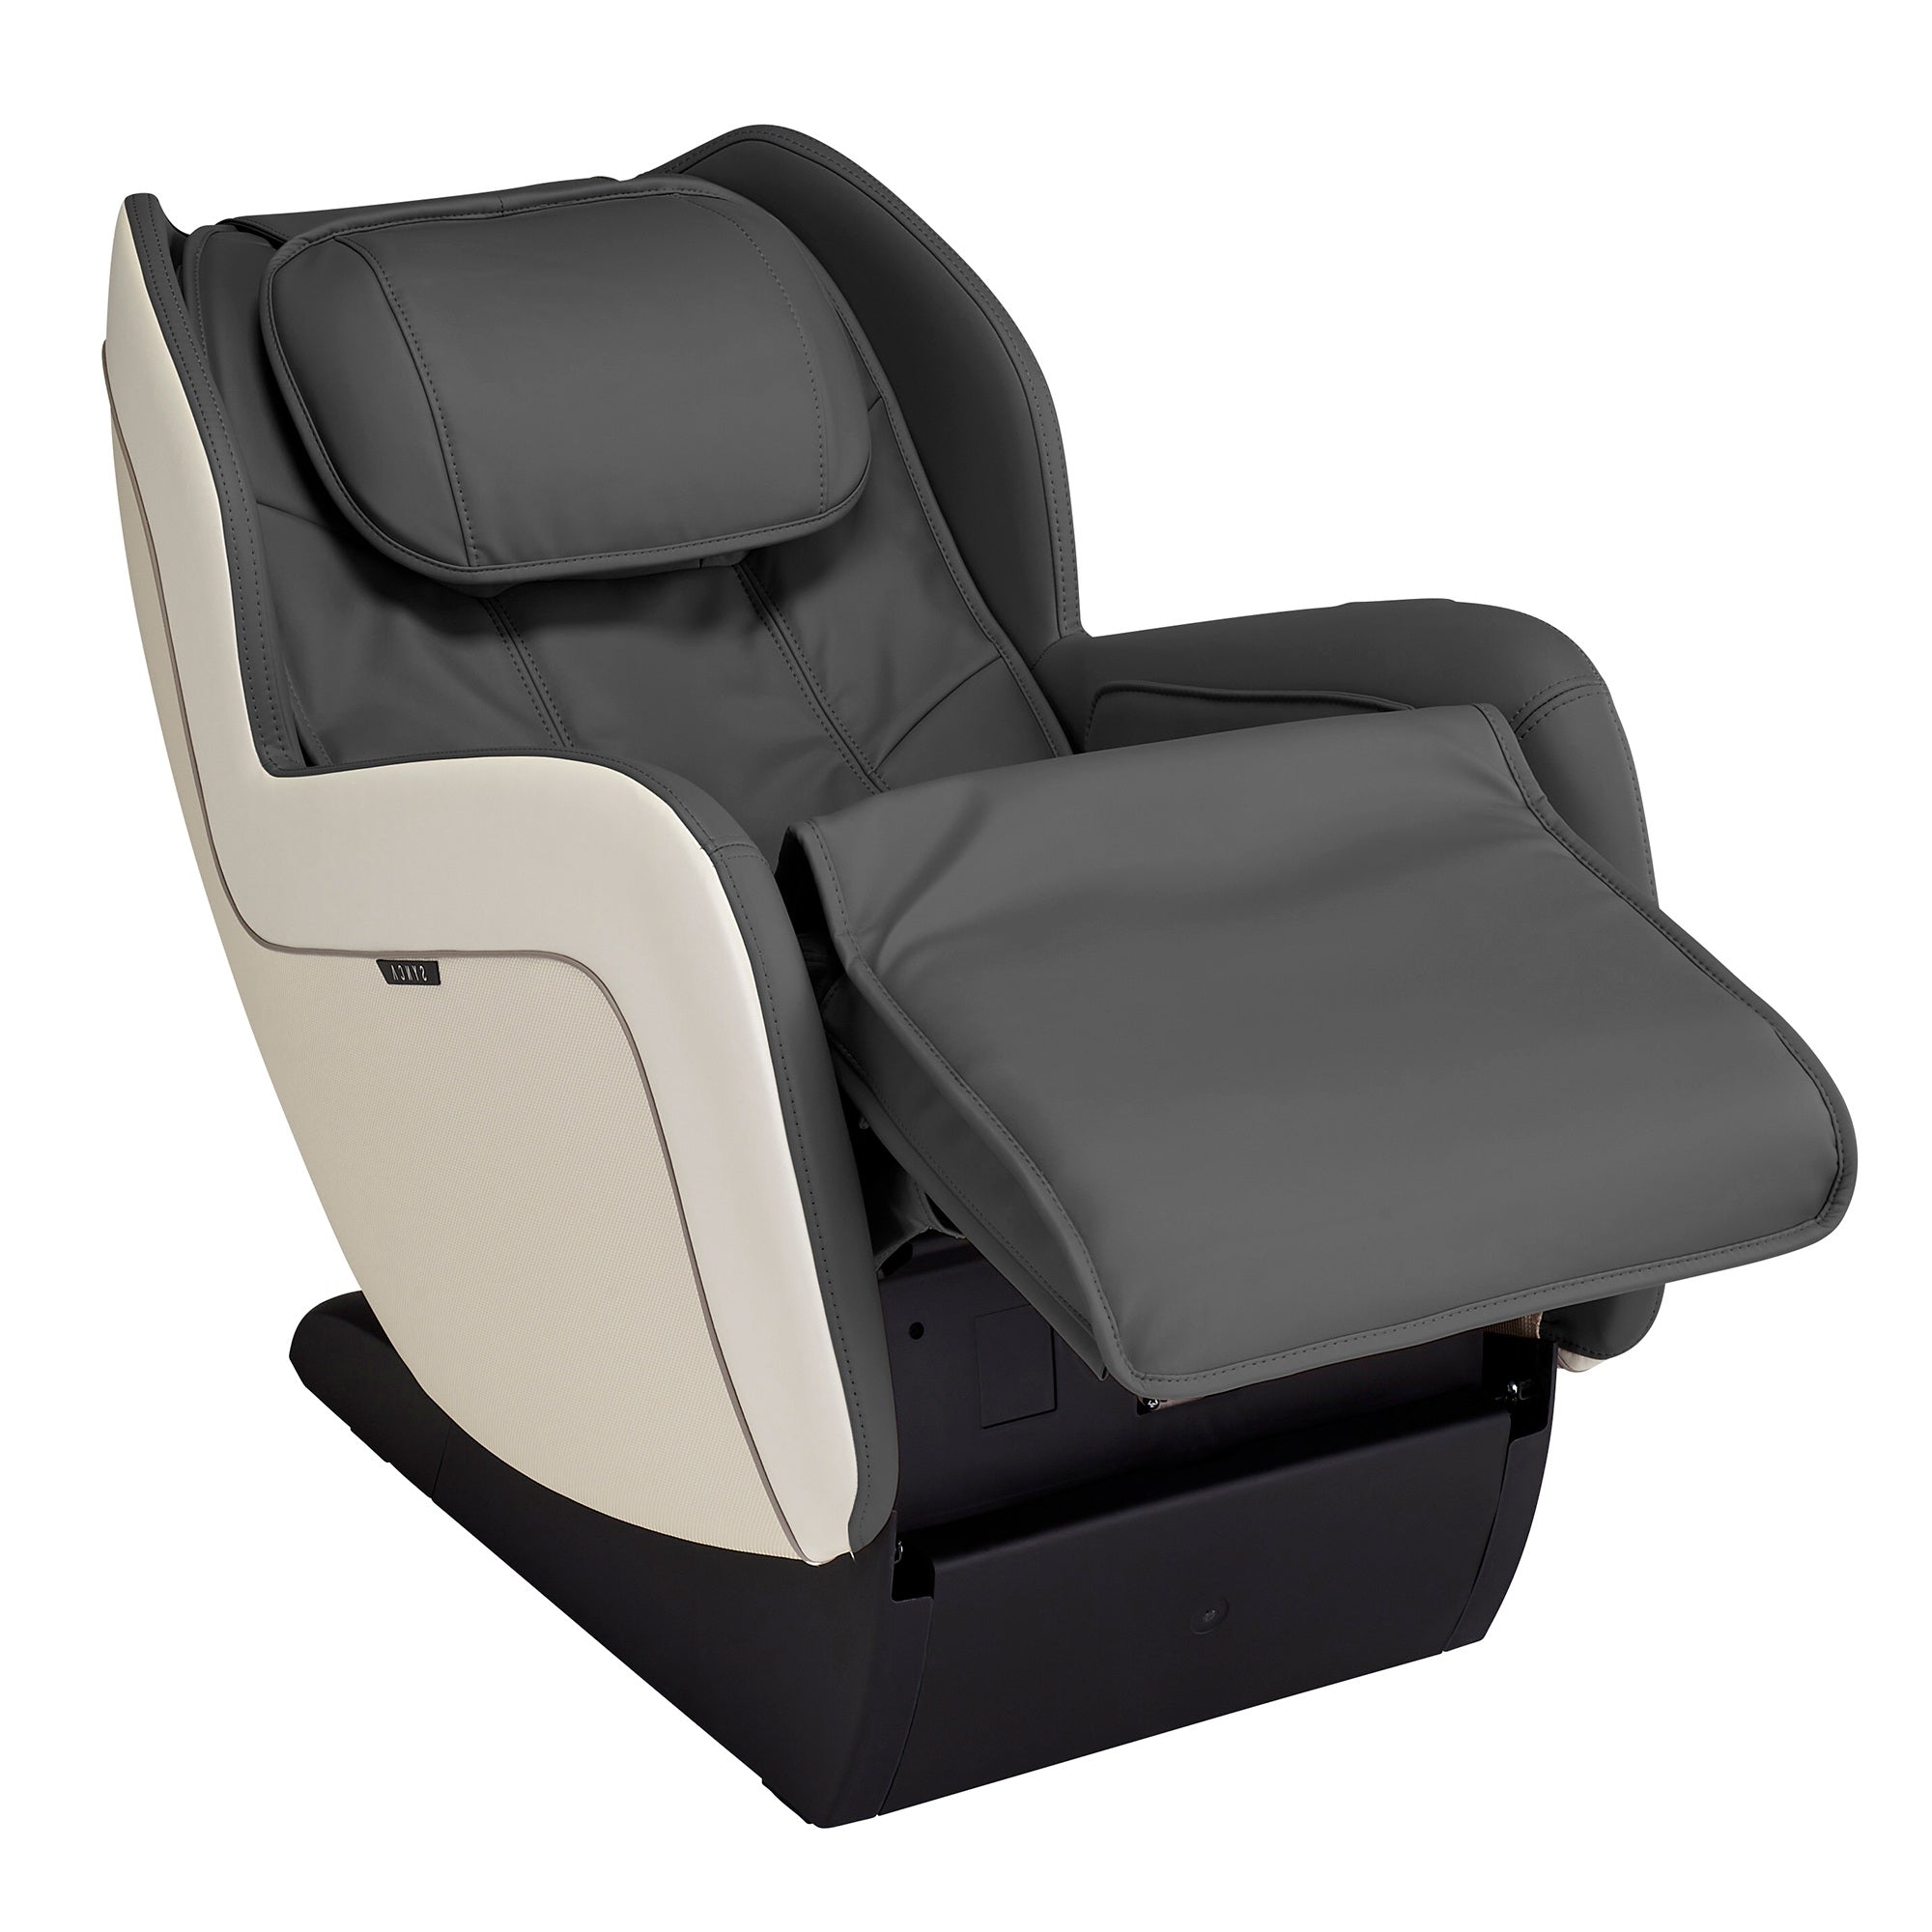 Synca CirC+ Zero Gravity Massage Chair – Best Body Massage Chair